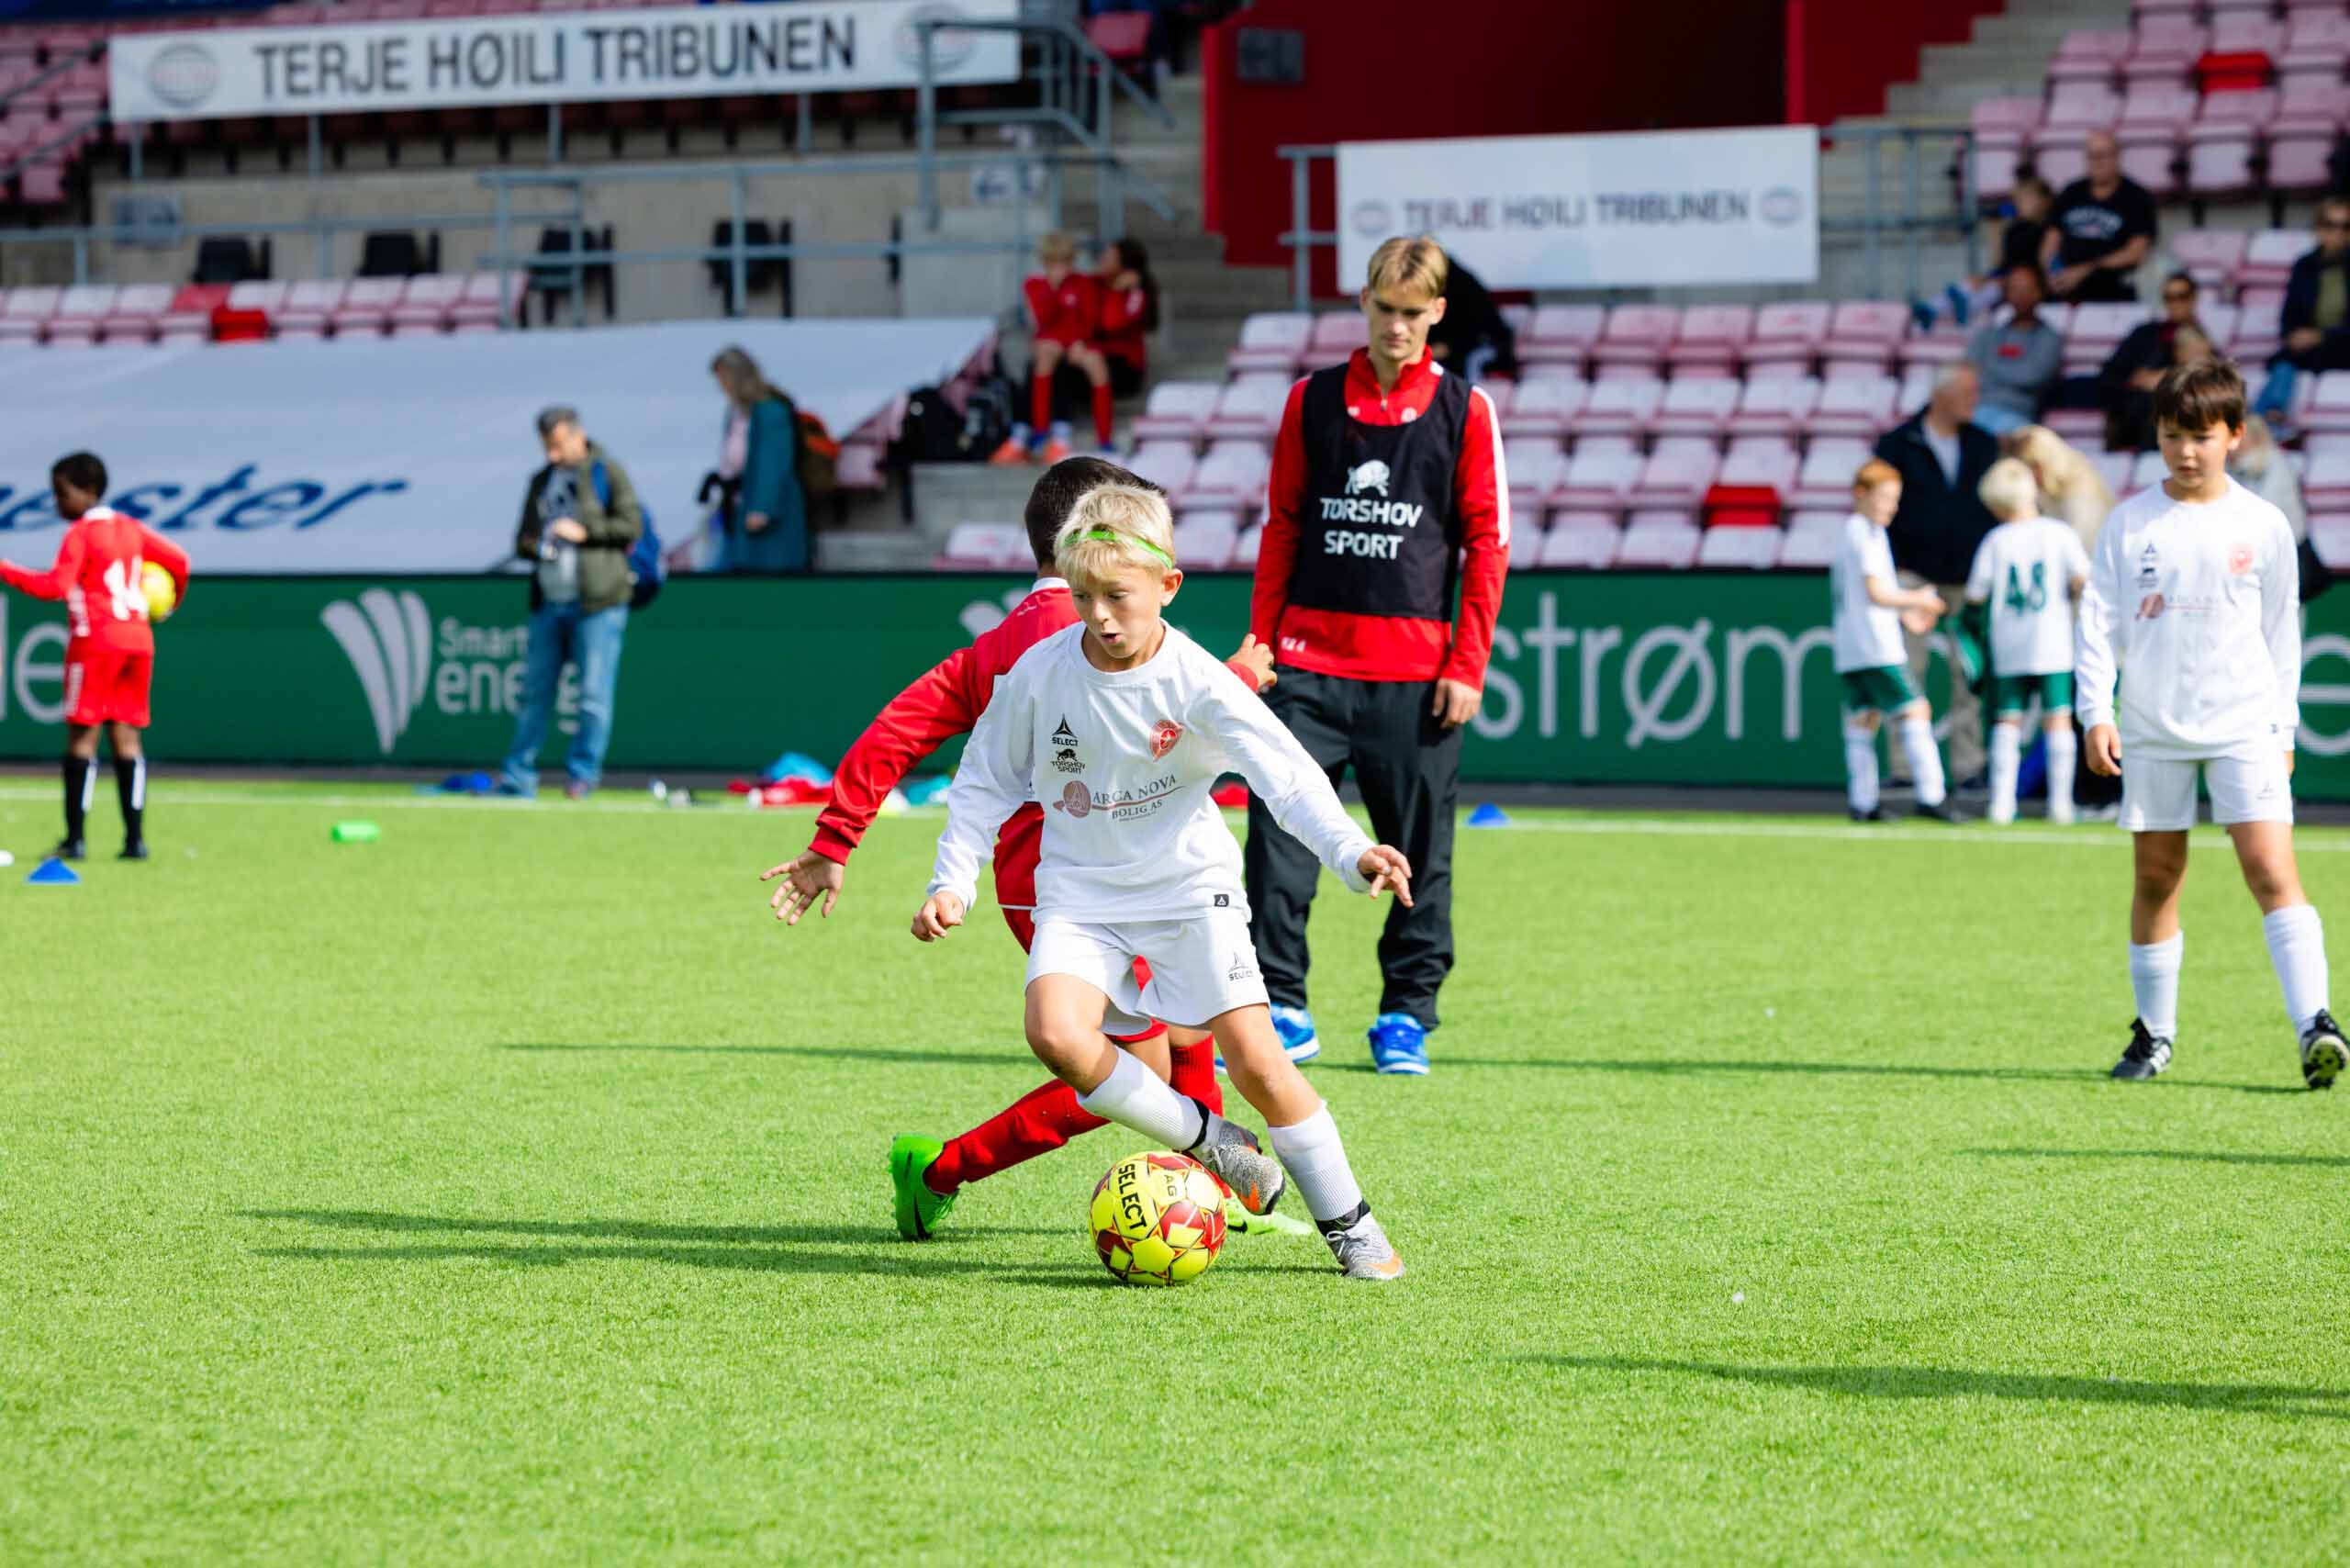 Smart Energi-cupen blir arrangert på Fredrikstad stadion hver høst, og samler lag og foreninger i hele Østfold. Foto: Fredrikstad Blad